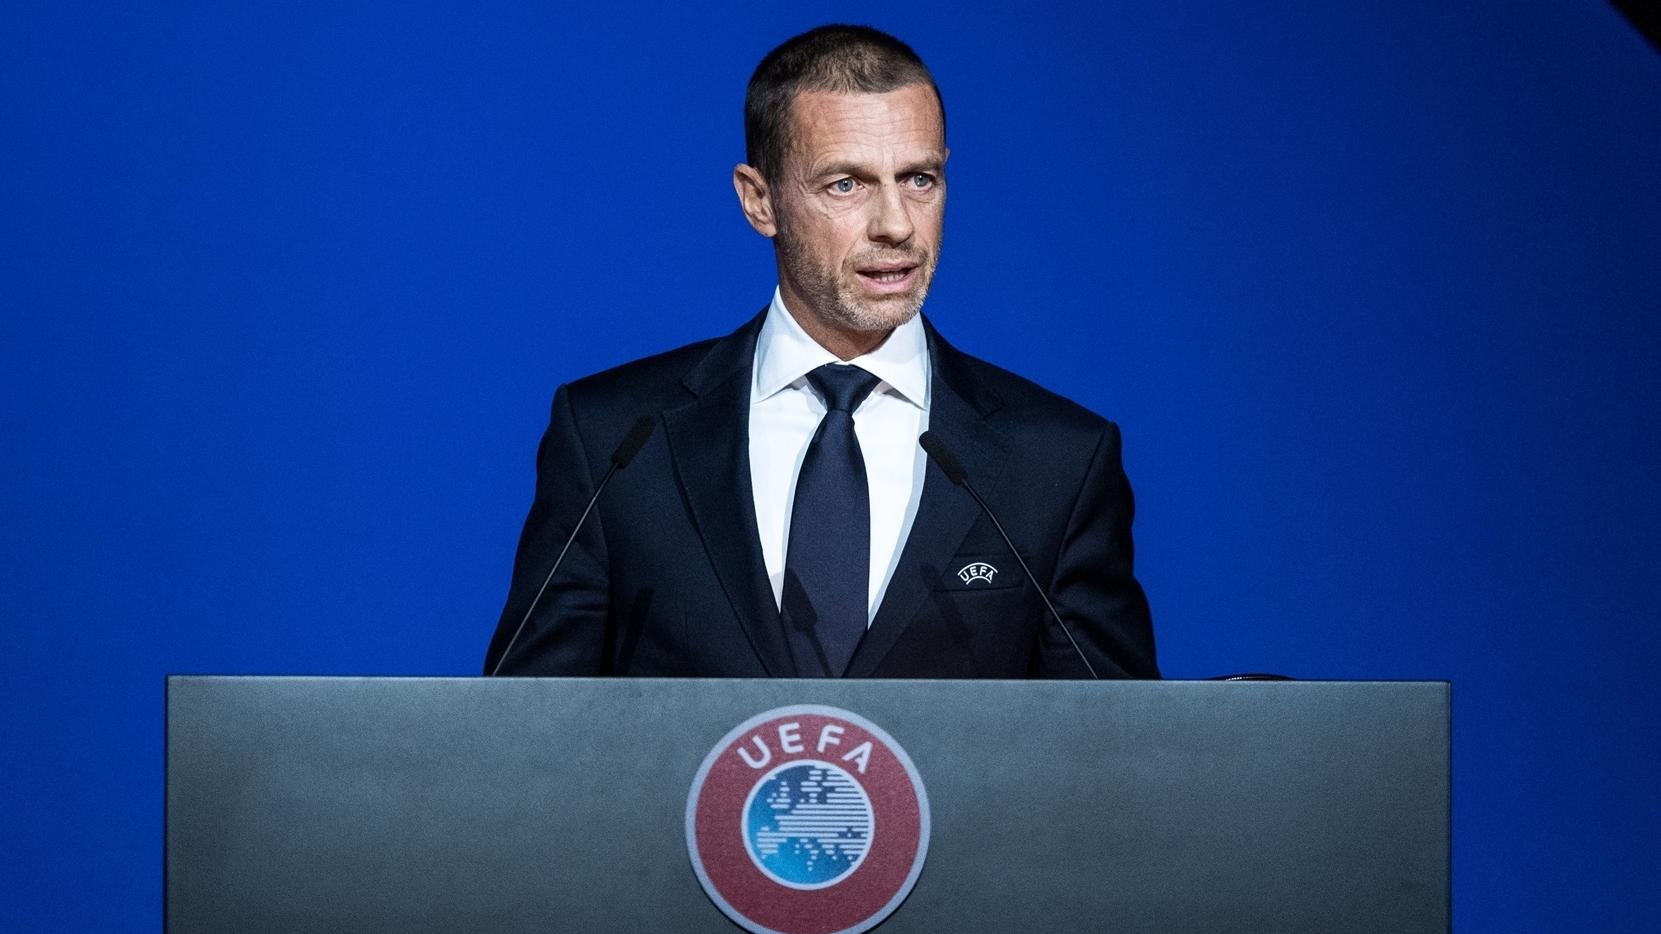 UEFA President Aleksander Čeferin: 'Purpose over profit. That is the key' | Inside UEFA | UEFA.com